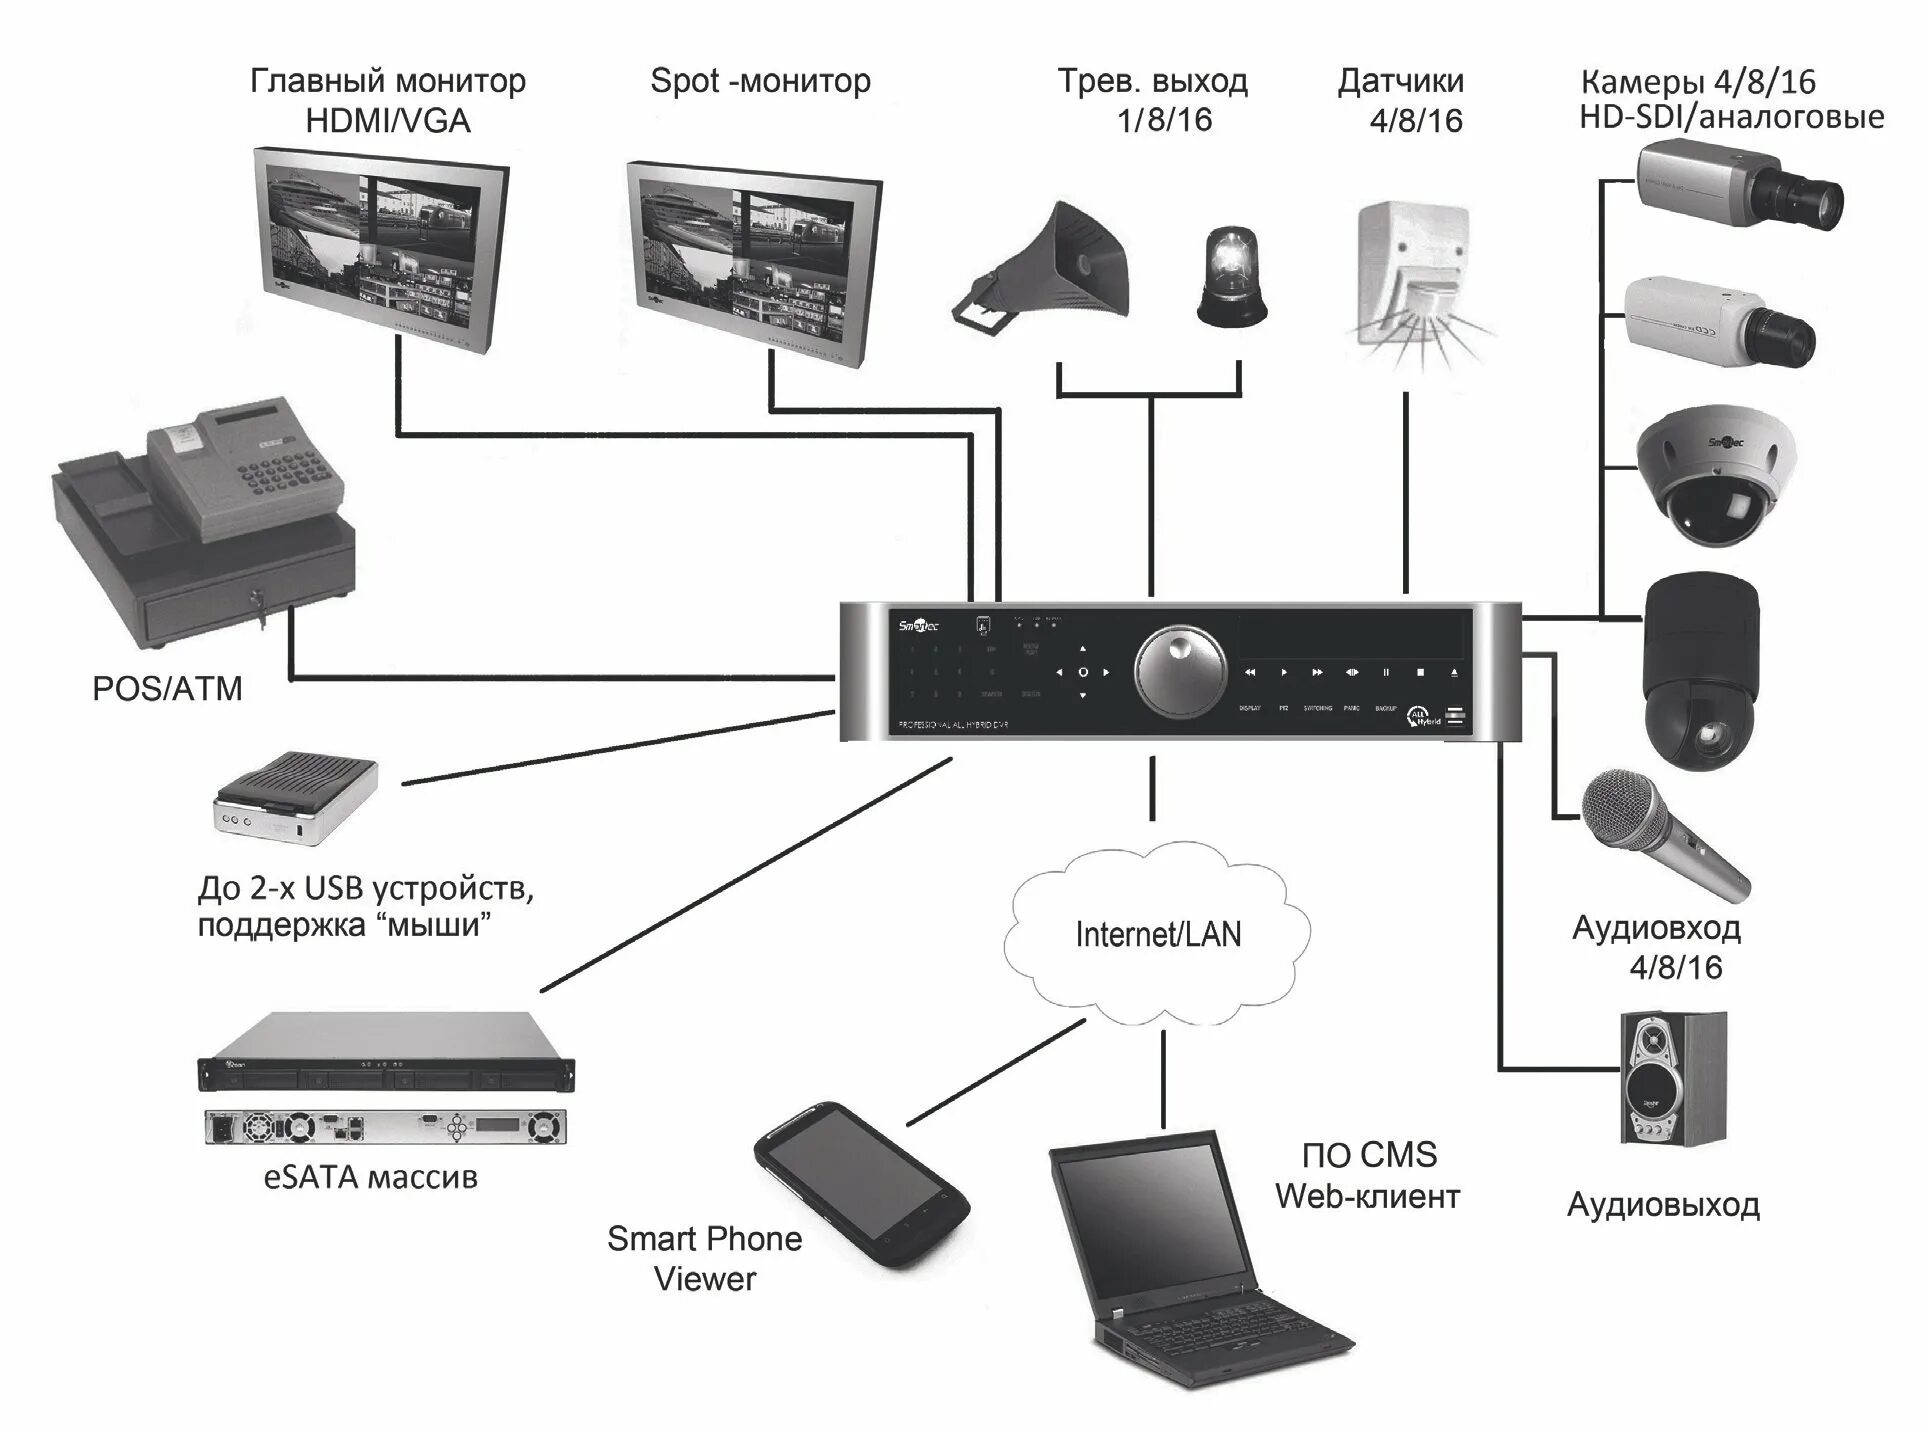 Схема IP камеры с гибридным видеорегистратором. Схема подключения 8 IP камер видеонаблюдения к видеорегистратору. Схема подключения 2 видеокамер и видеорегистратора. Цифровой видеорегистратор для видеонаблюдения схема подключения.